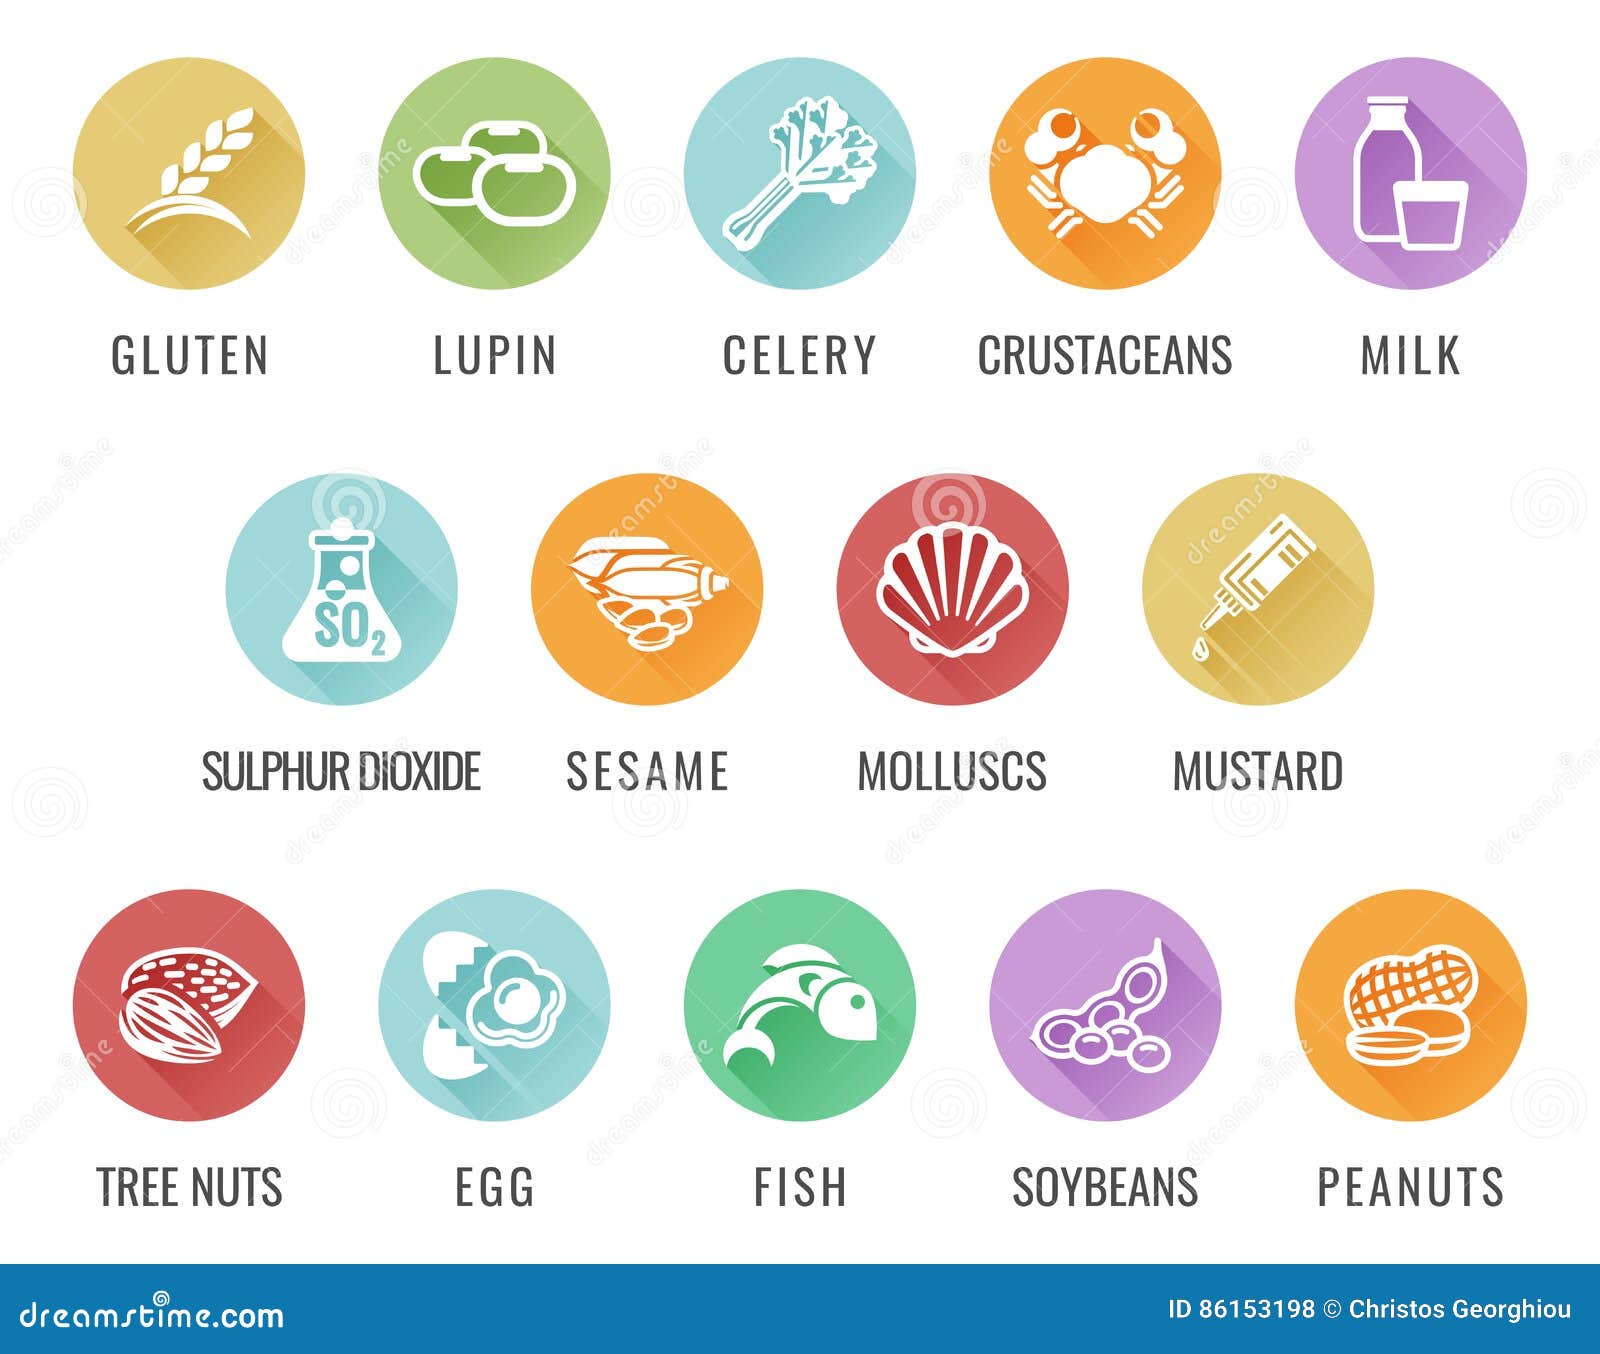 allergen food allergy icons